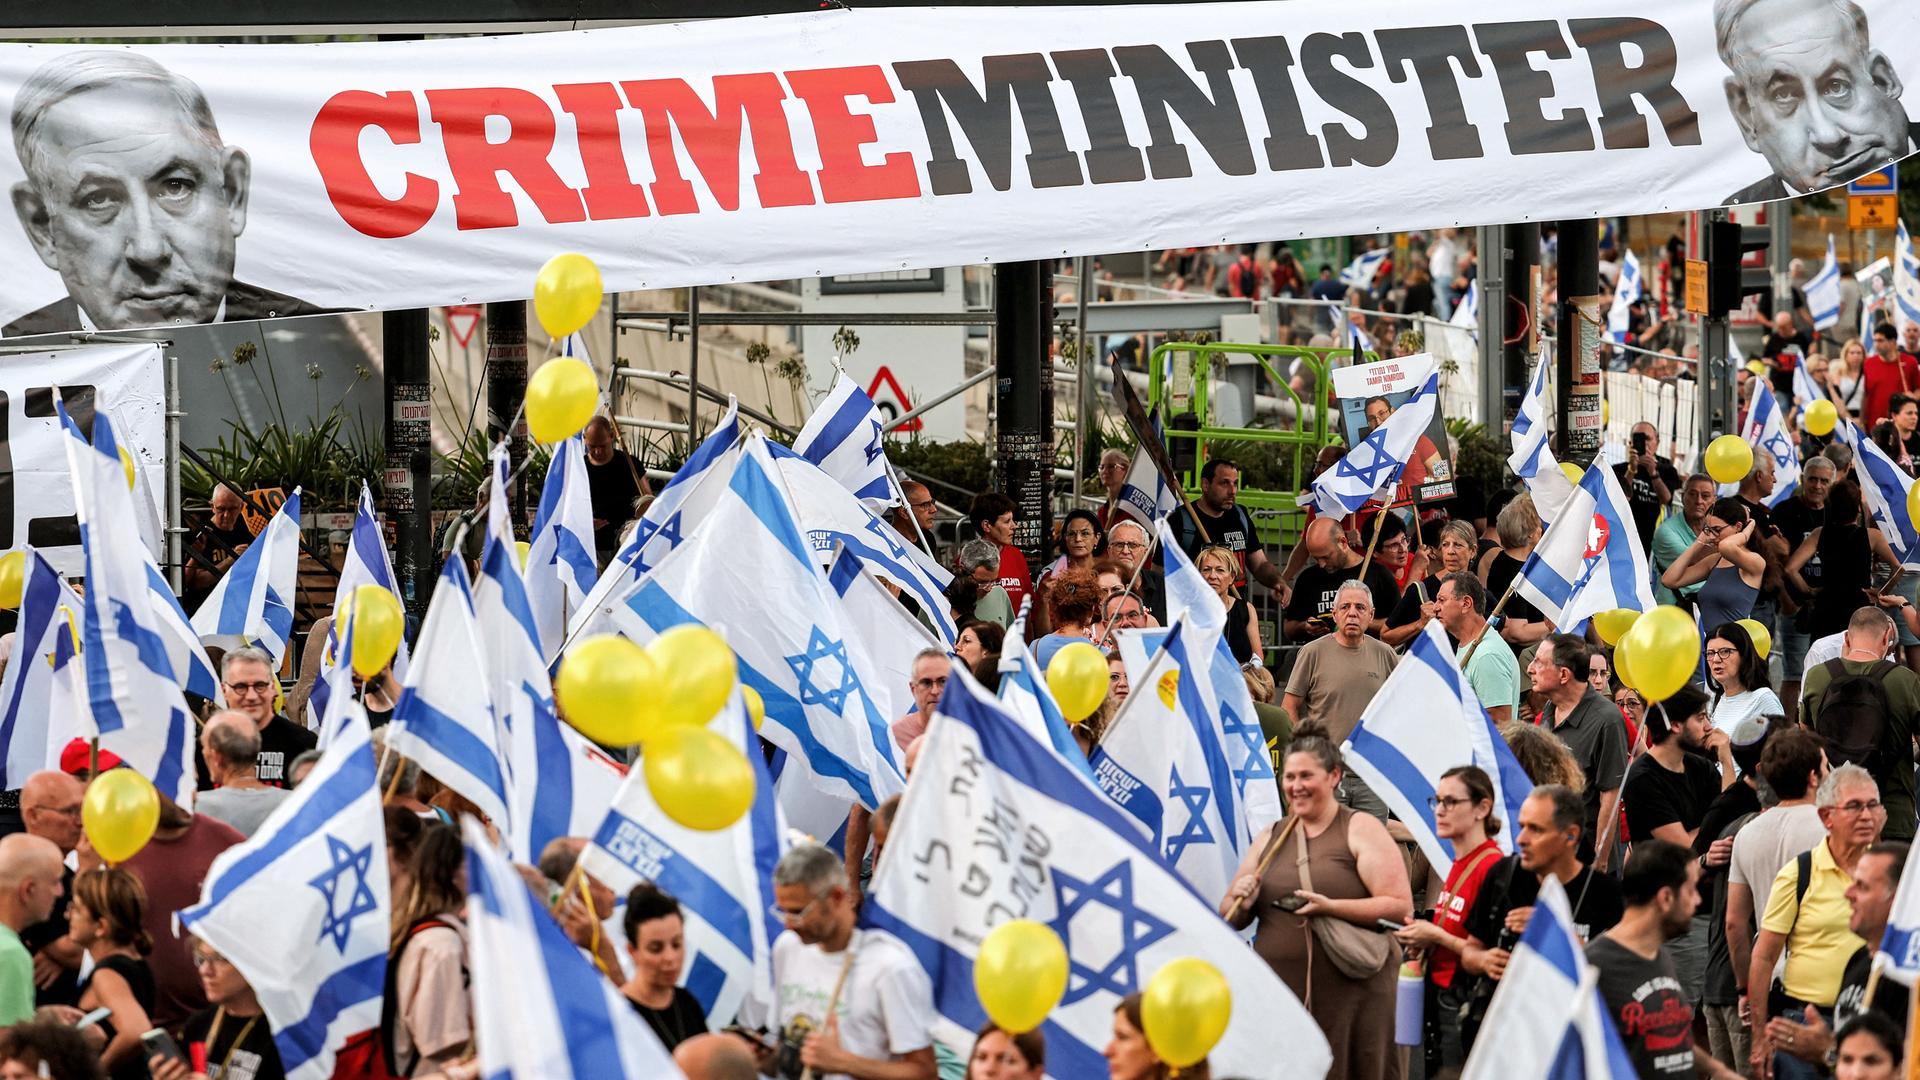 Über Demonstranten mit Israel-Fahnen hängt ein Banner mit einem Bild Netanjahus und der Aufschrift "Crime-Minister".